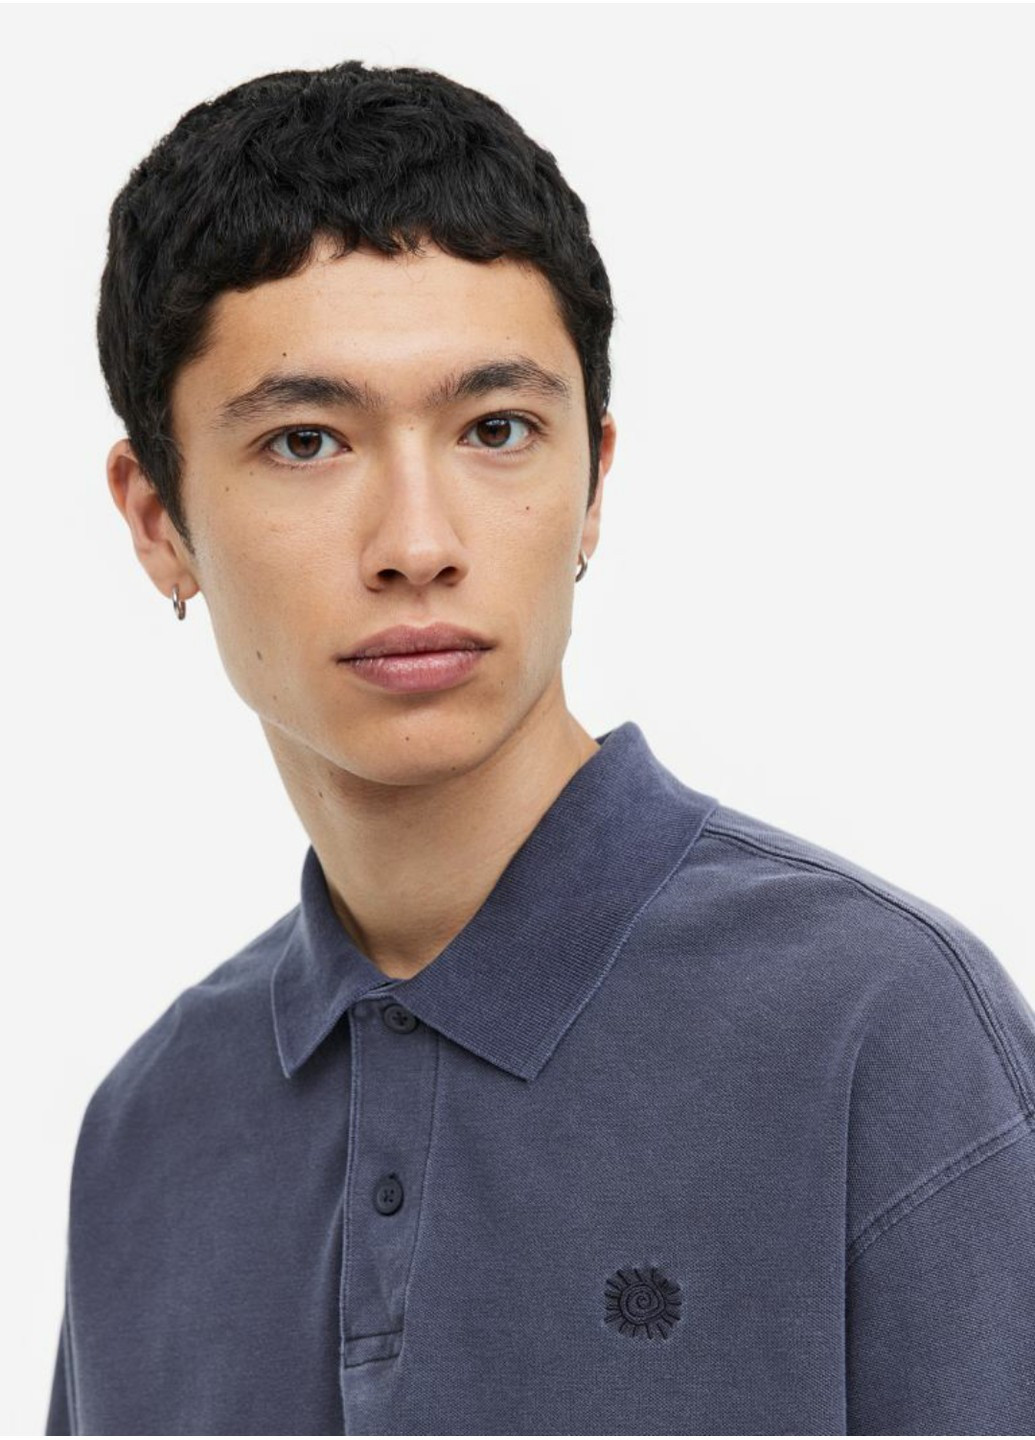 Темно-серая мужская футболка с воротником н&м (55689) s темно-серая H&M